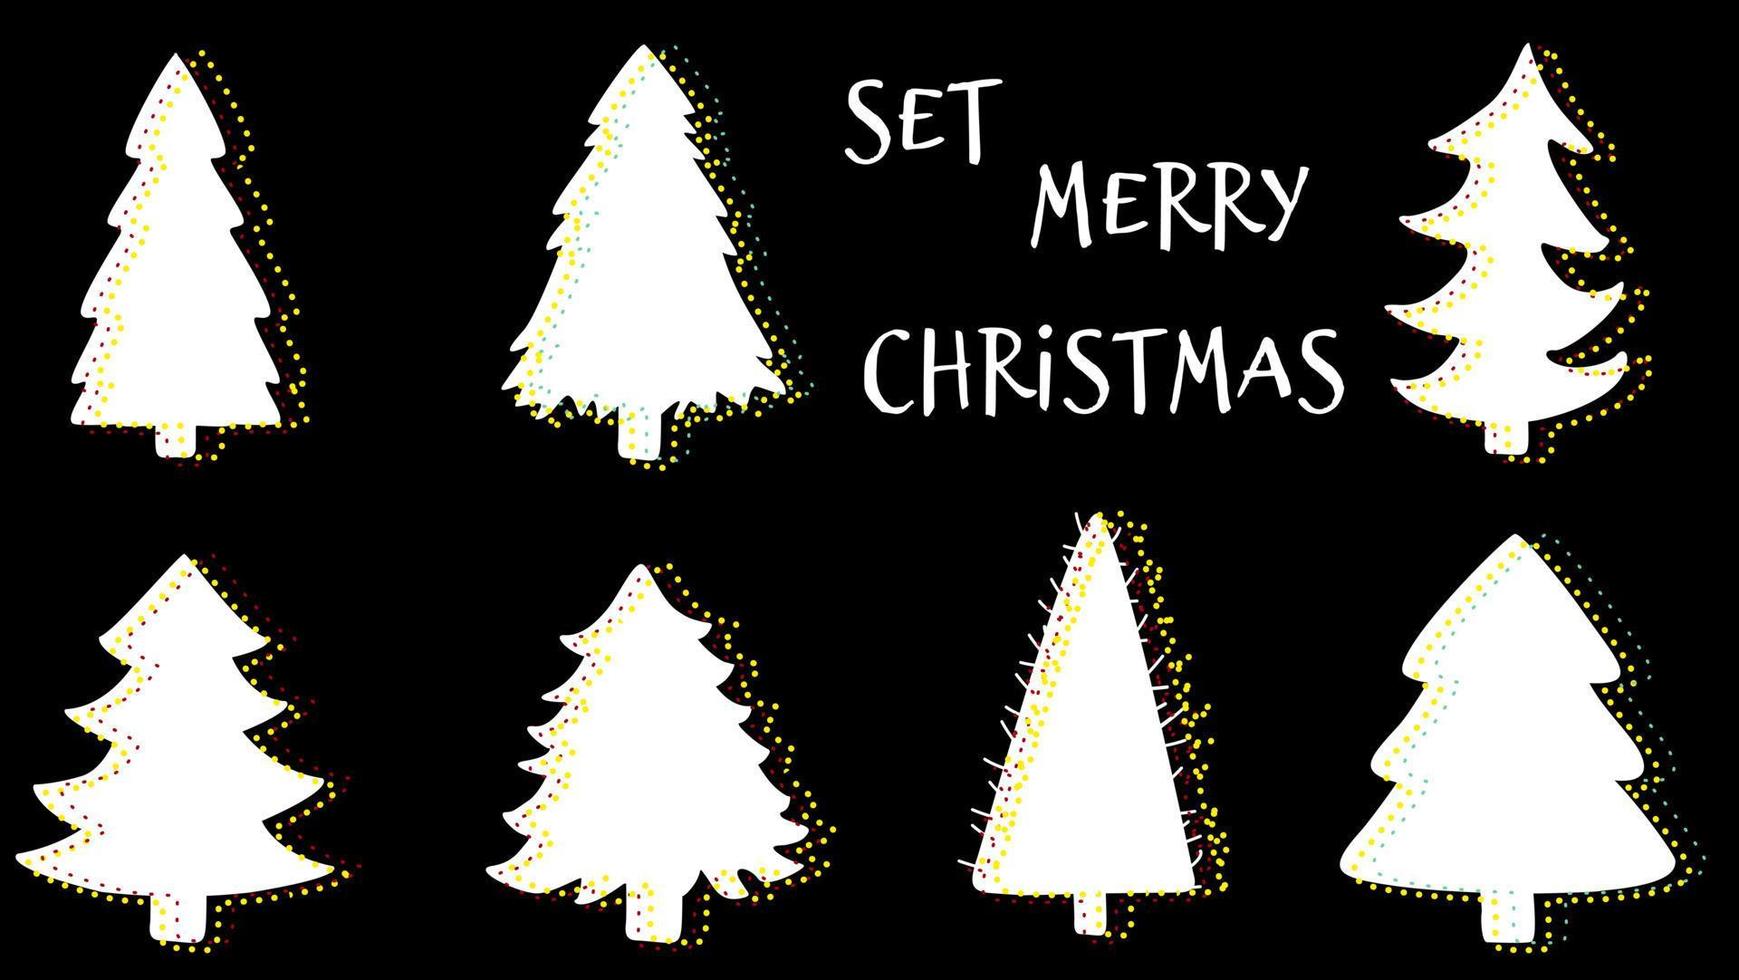 símbolo de la silueta del árbol de navidad de año nuevo. conjunto de objetos sobre fondo negro, vector aislado.